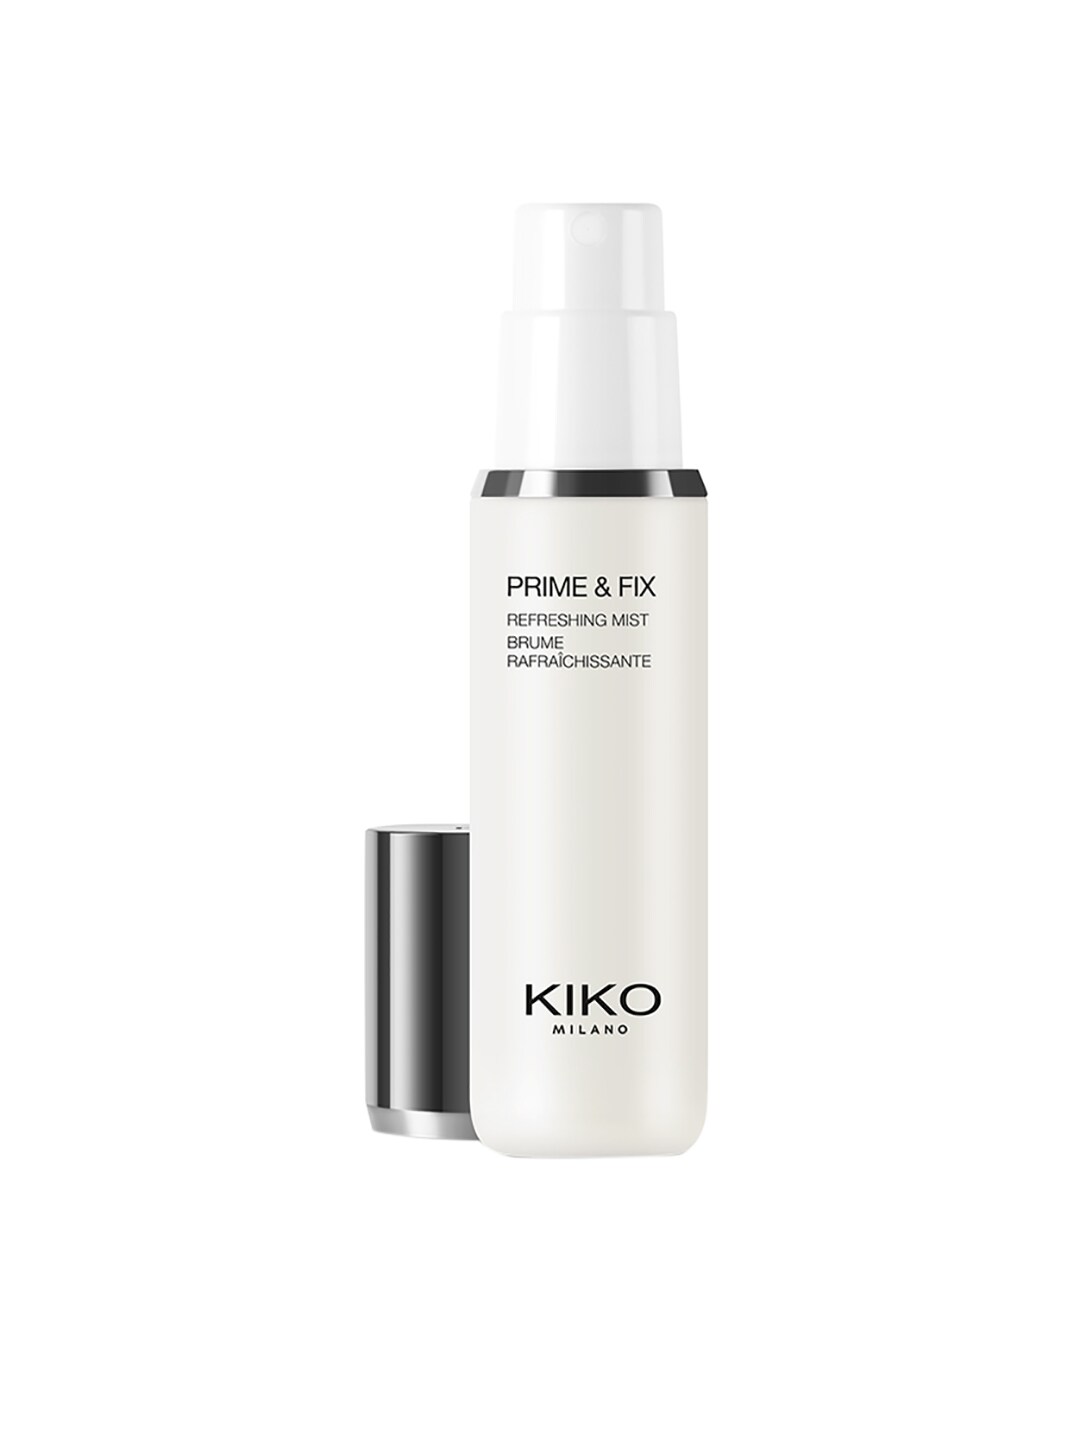 KIKO MILANO Prime & Fix Refreshing Mist 70 ml Price in India